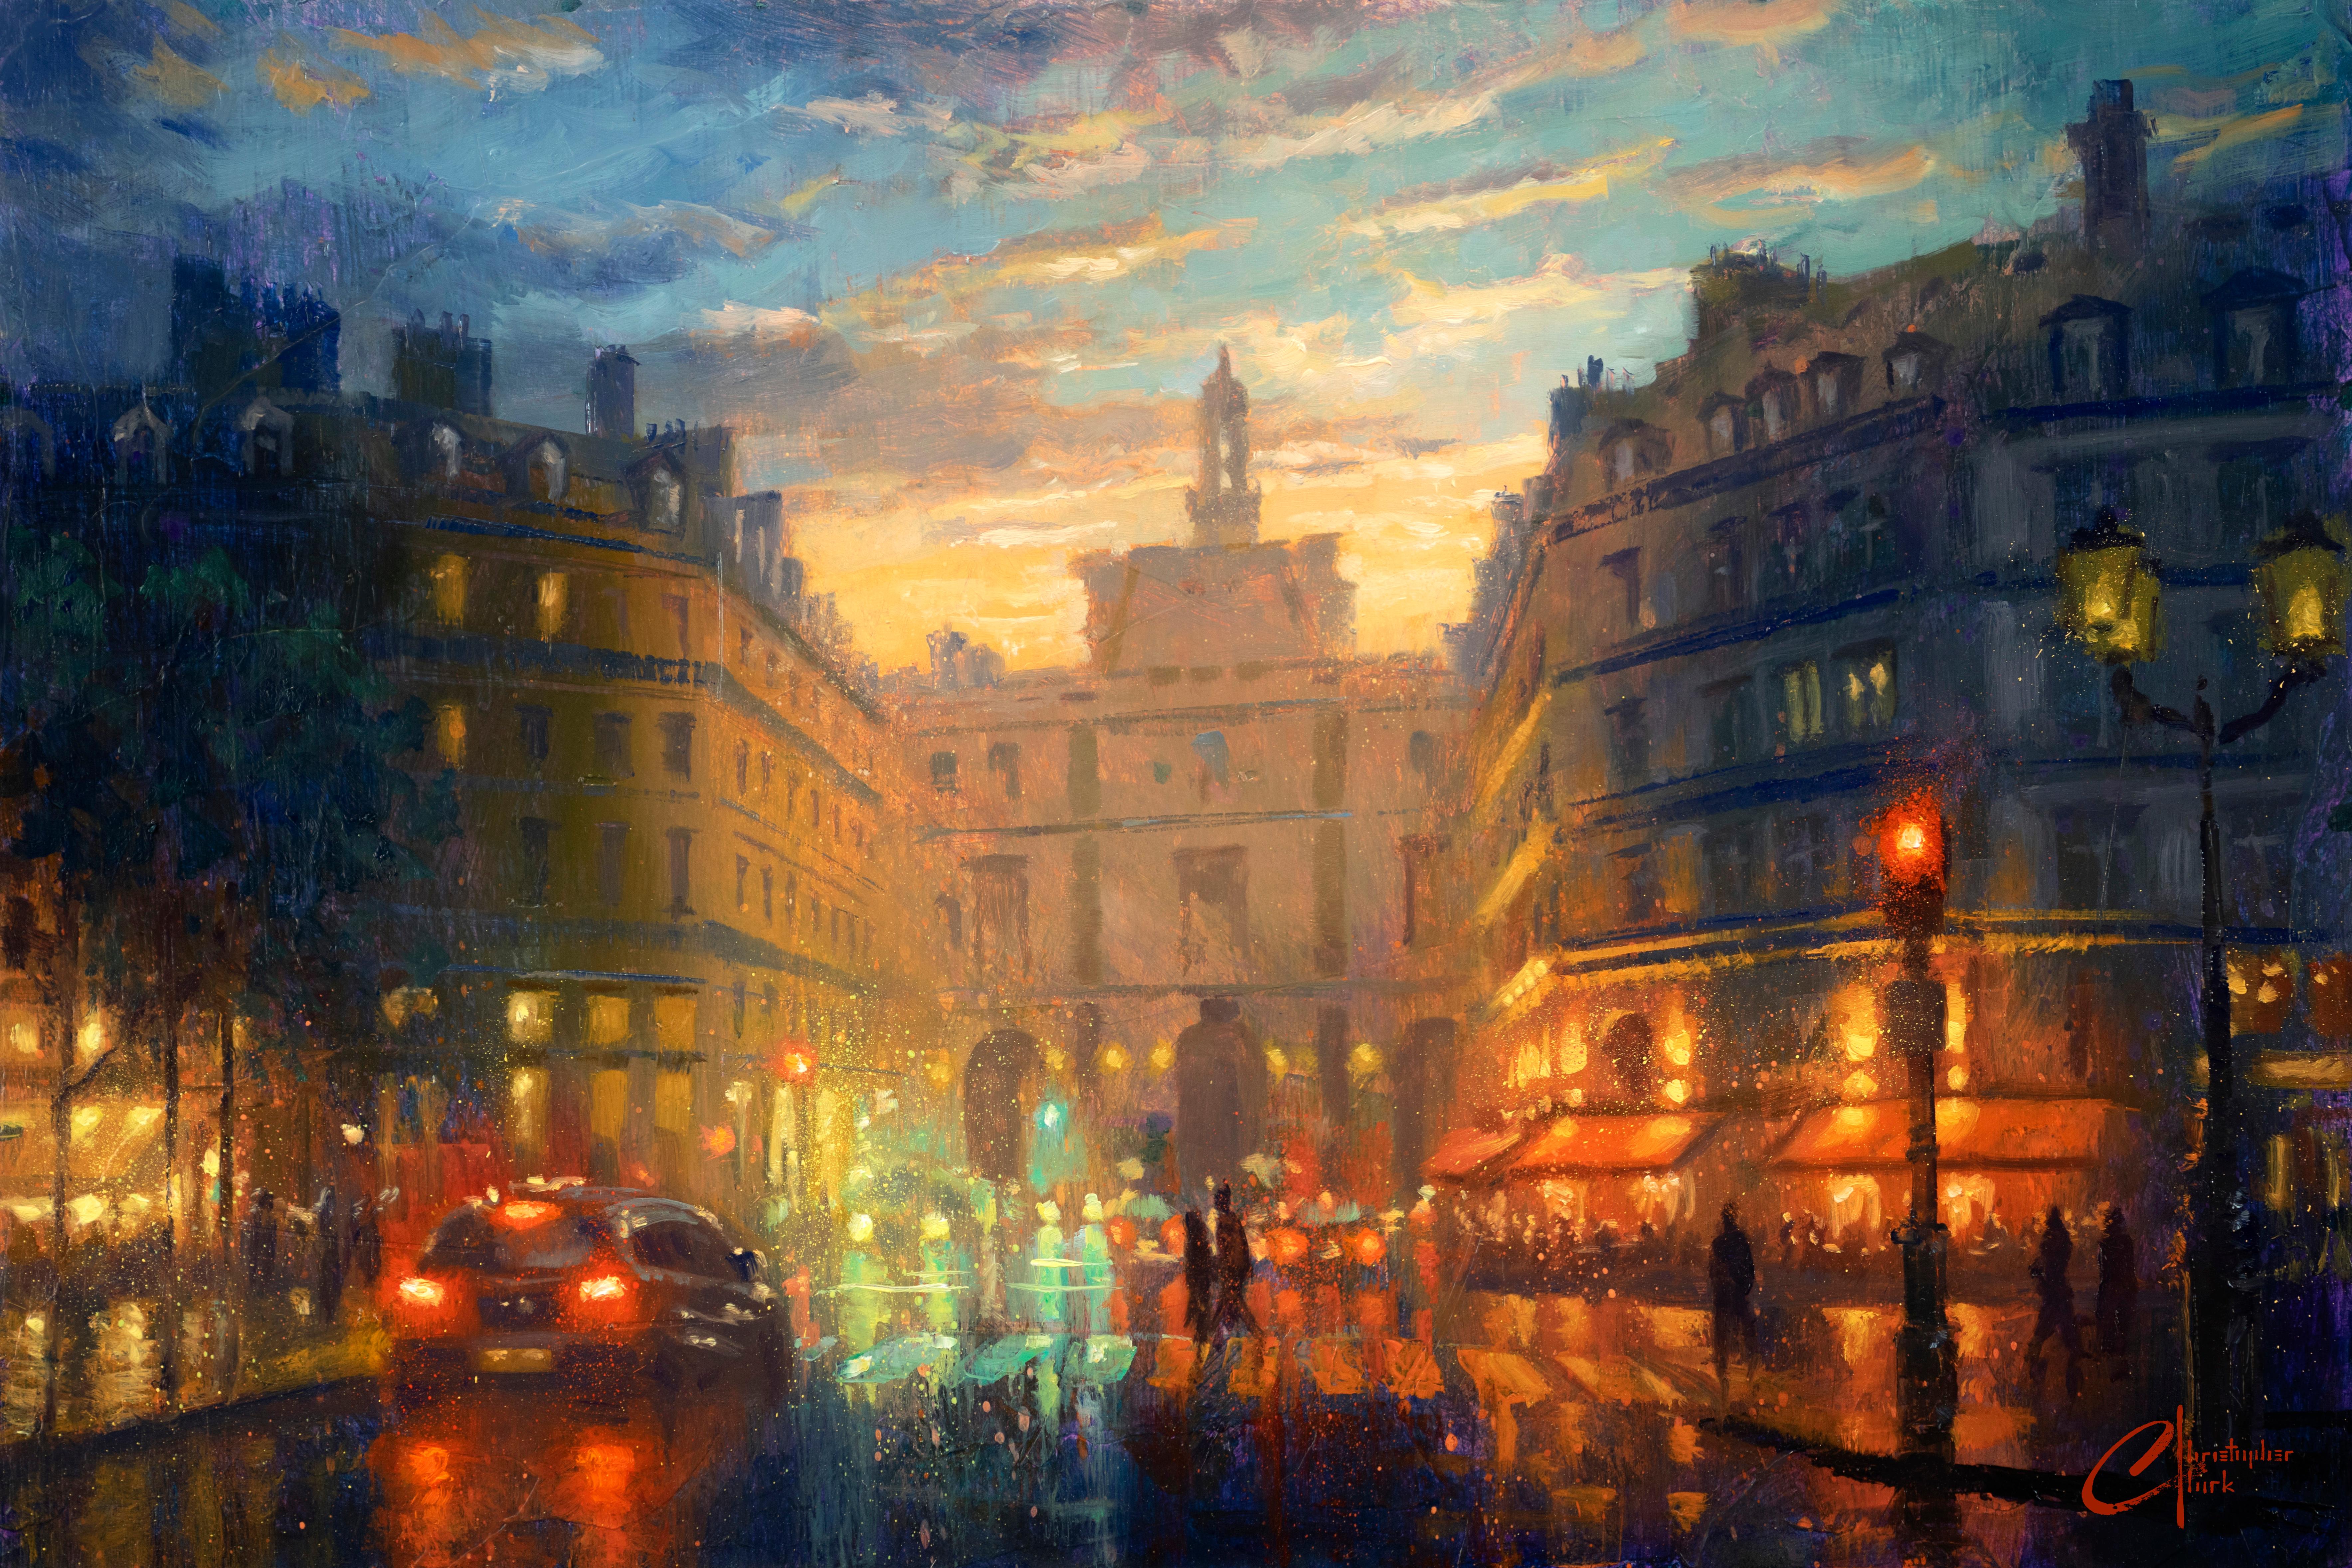 Christopher Clark Landscape Painting - "Paris, Hotel du Louvre" Oil Painting